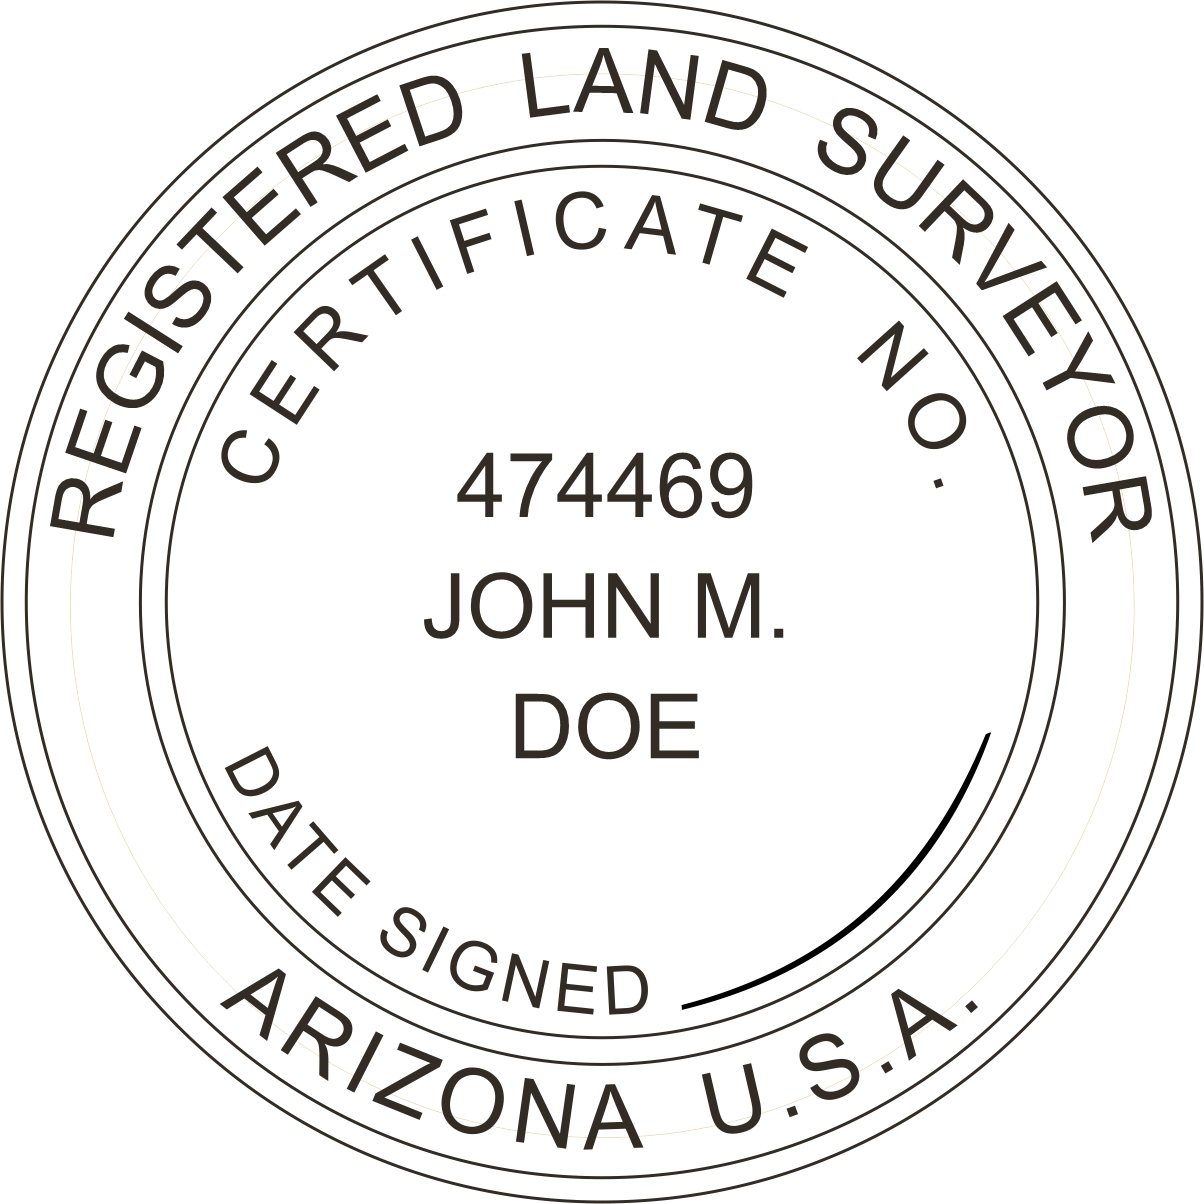 Land Surveyor Seal - Desk - Arizona